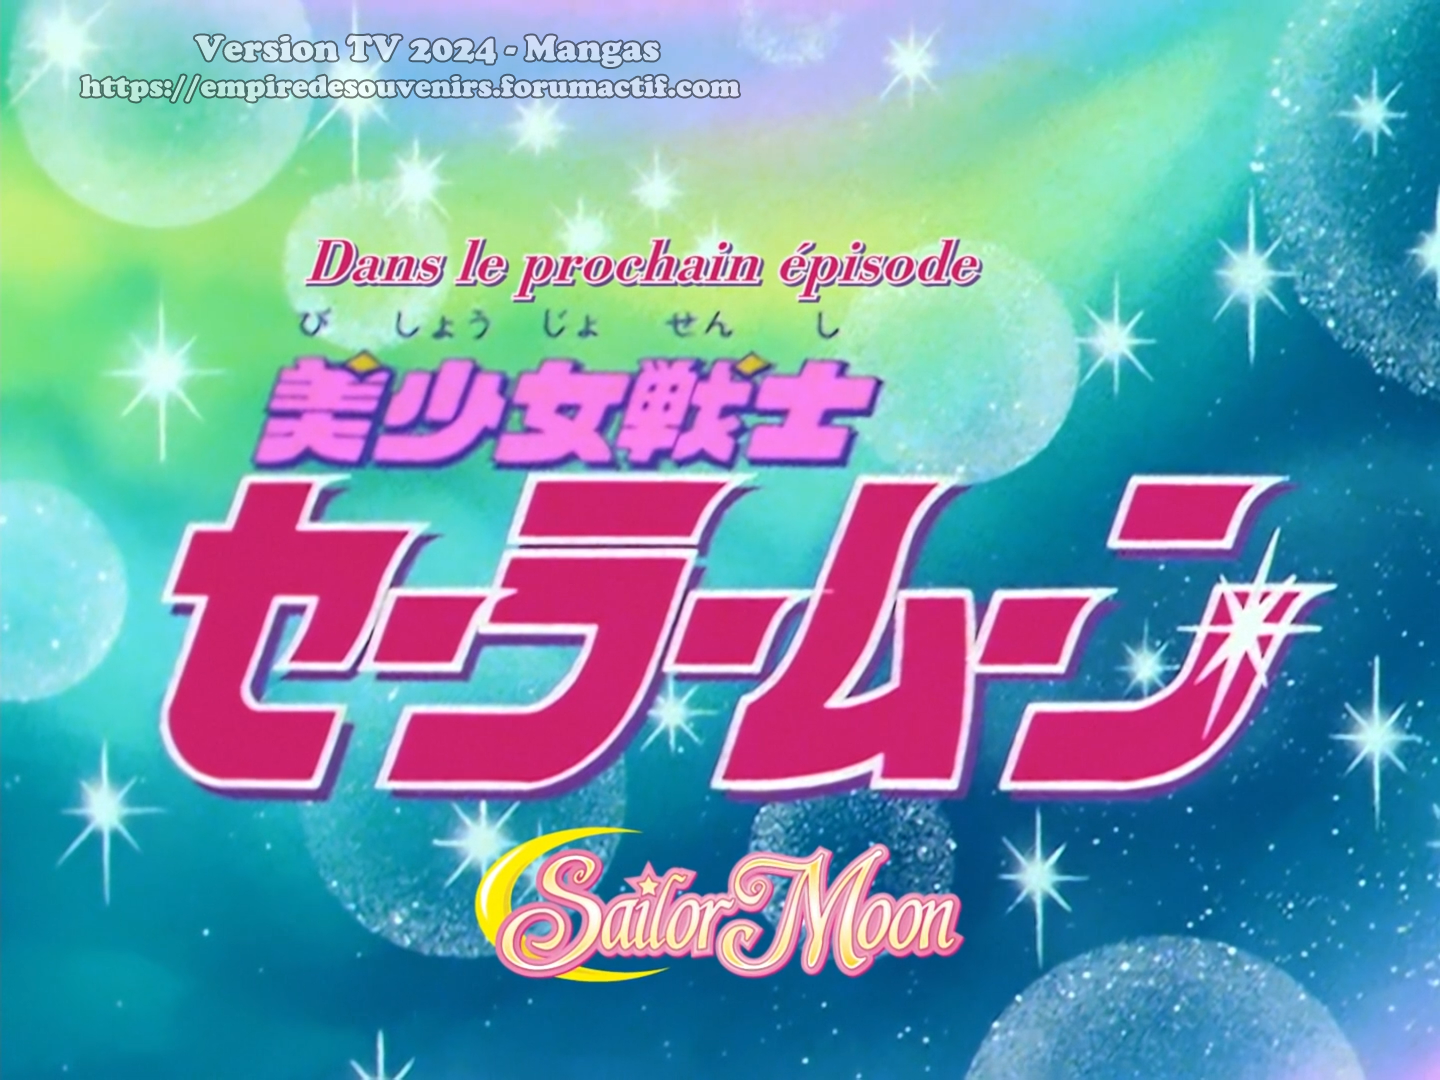 Sailor Moon sur Mangas ! 1gre